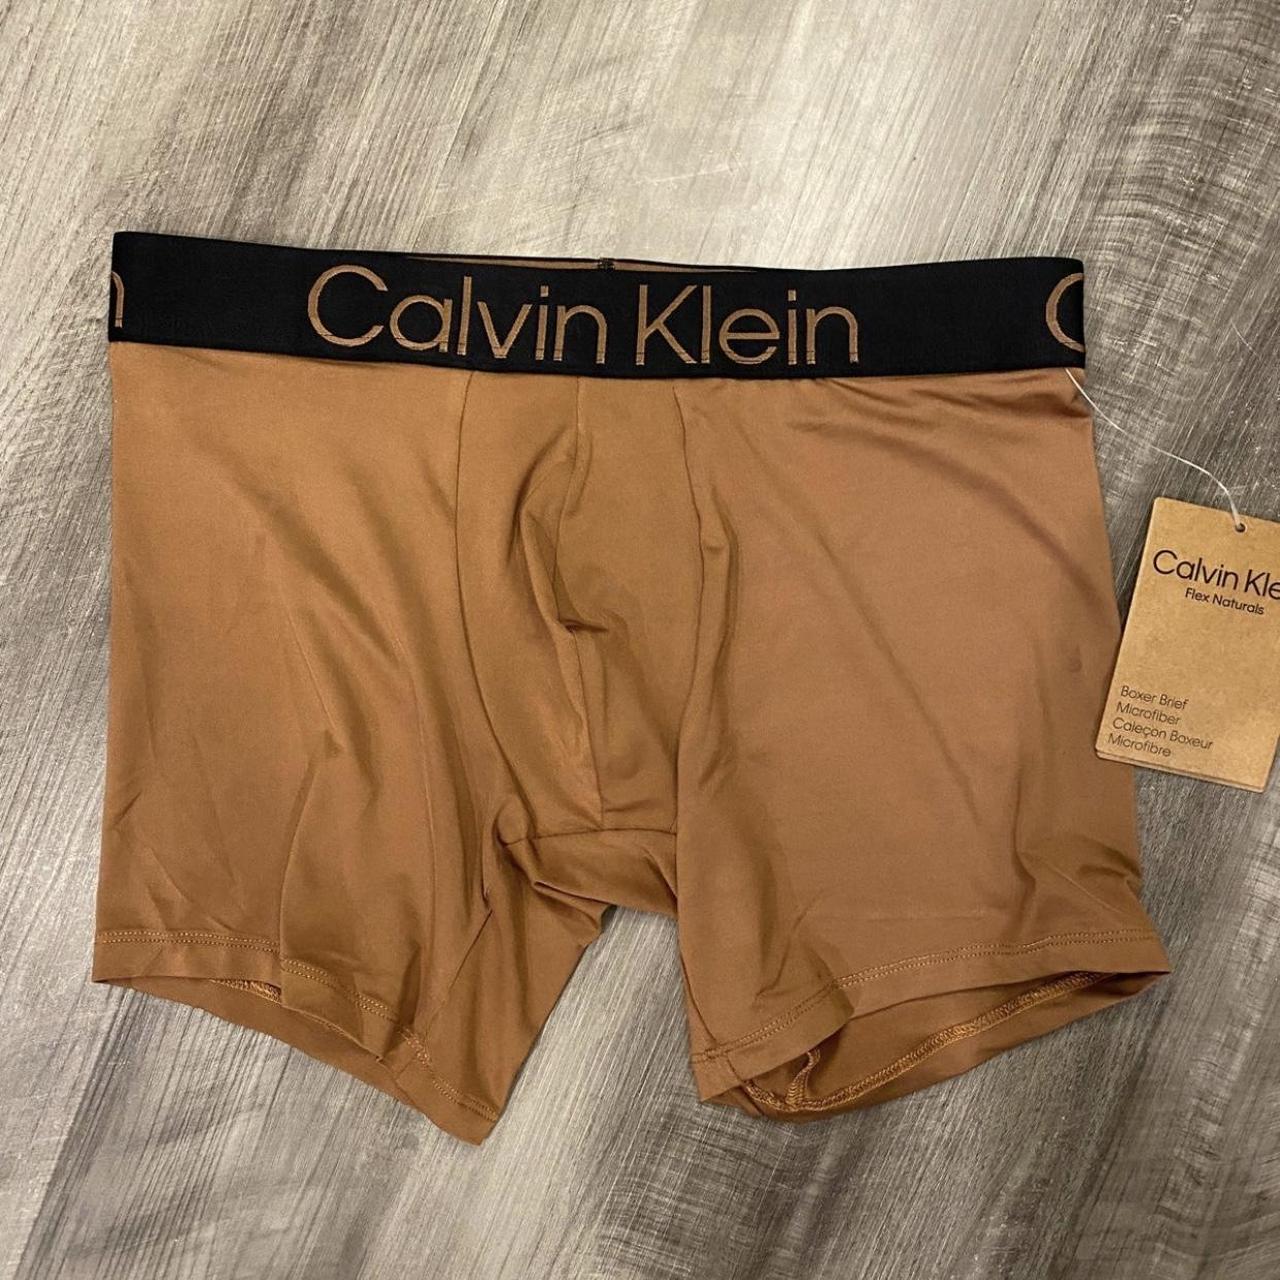 Calvin Klein Men's Tan Boxers-and-briefs